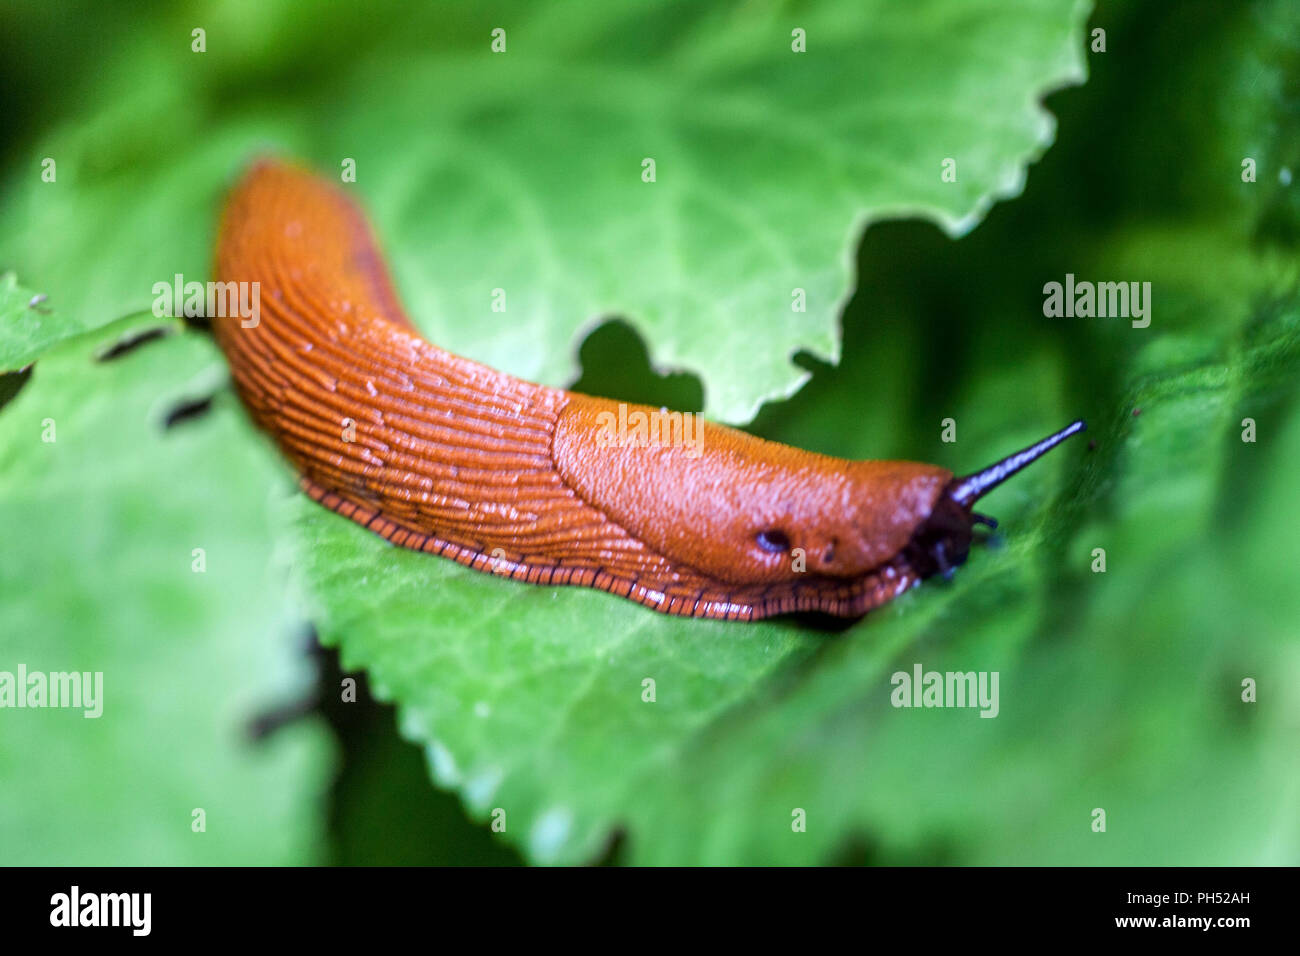 Red Slug, Arion rufus on bergenia leaves Slug on leaf, garden pest Stock Photo